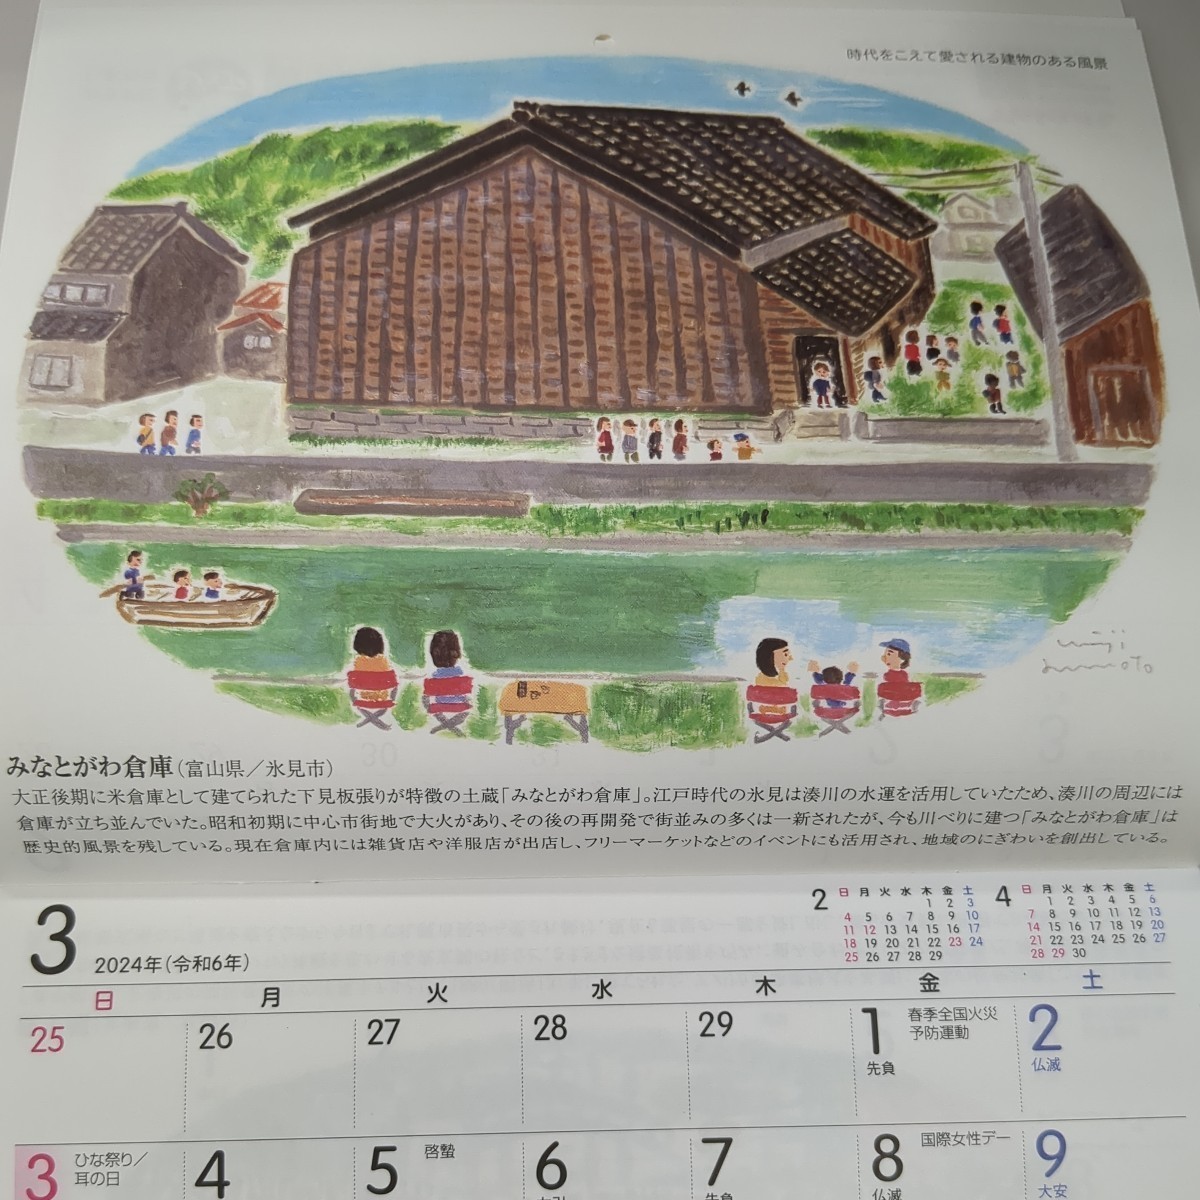 2024年(令和6年)壁掛けカレンダー/ヤクルト/みんなの風景～時代をこえて愛される建物のある風景～ 表紙の岡山県から 風景_画像5